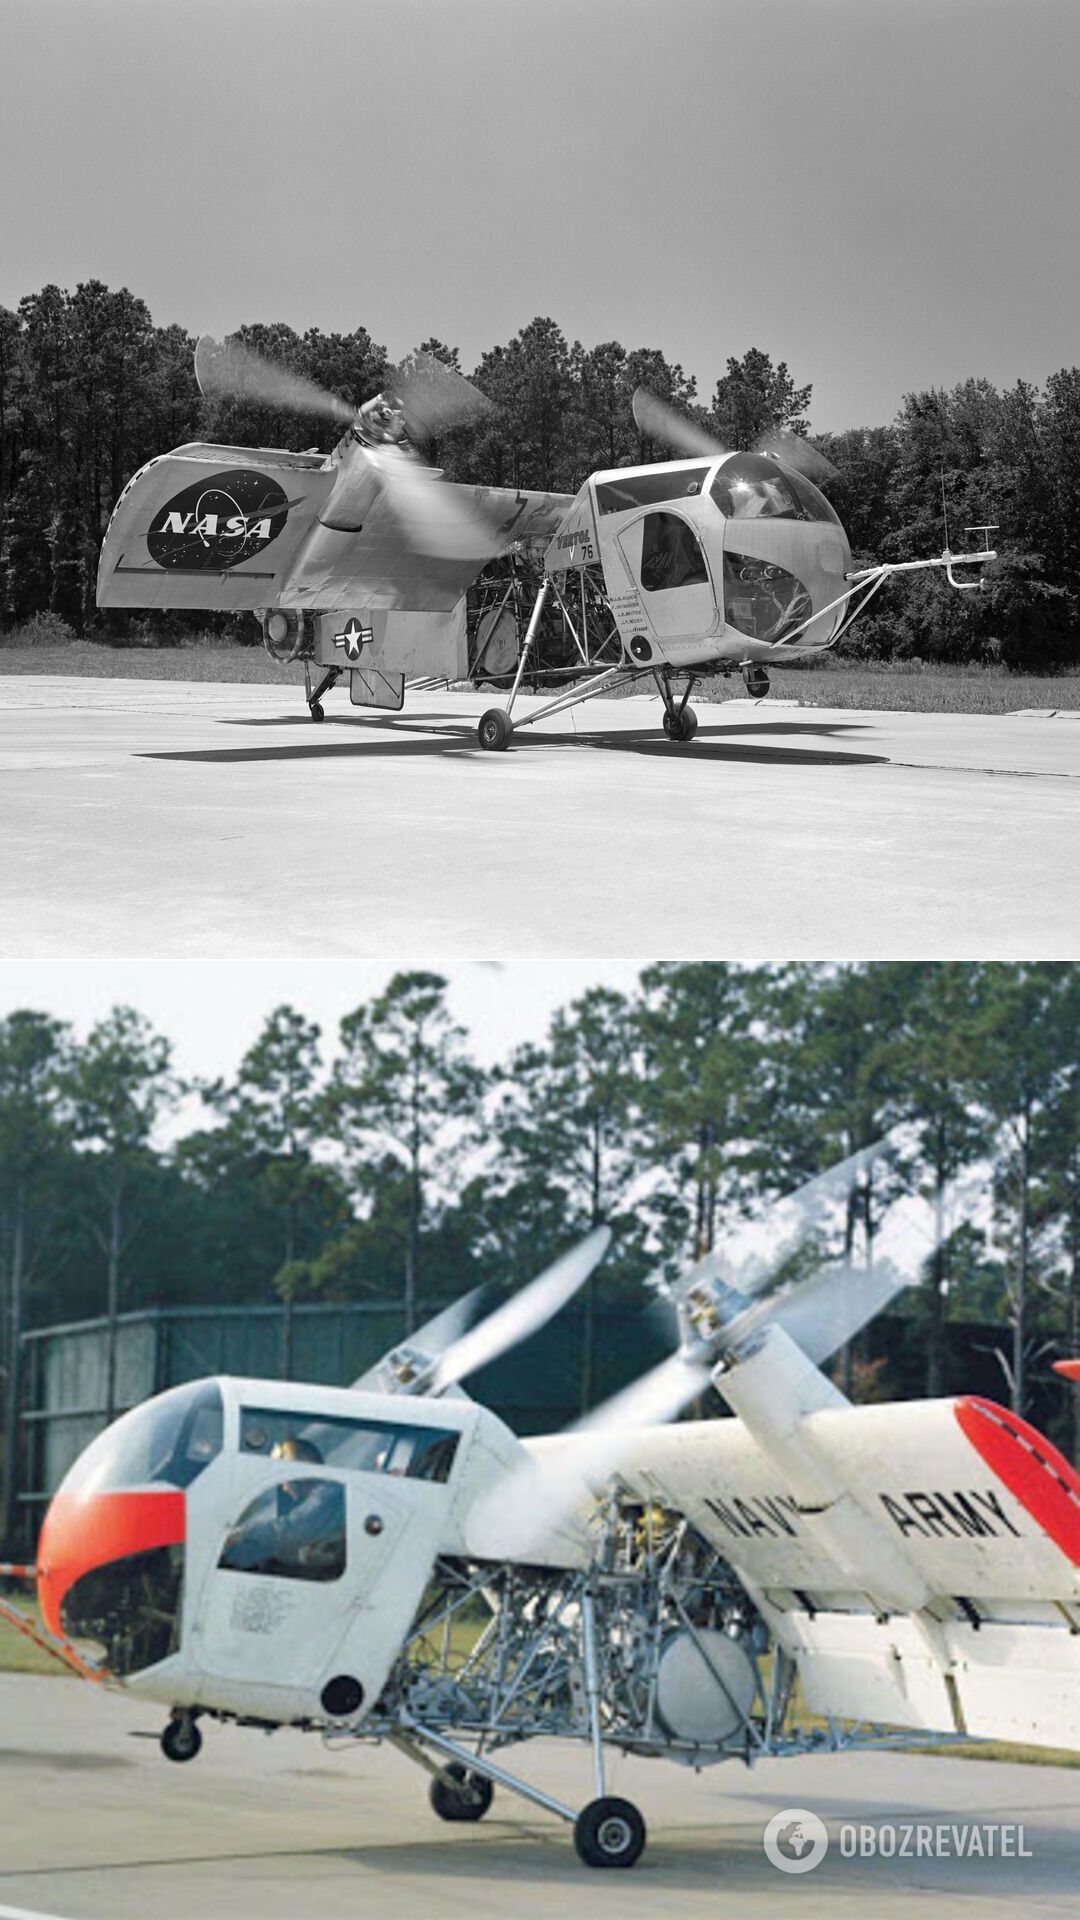 Oeing Vertol VZ-2 – перший у світі літальний апарат, який використовує концепцію поворотного крила, з вертикальним/укороченим зльотом і посадкою. Перший політ із зависанням у повітрі було здійснено VZ-2 влітку 1957 року. Після серії успішних випробувань апарат передали в дослідницький центр NASA на початку 60-х